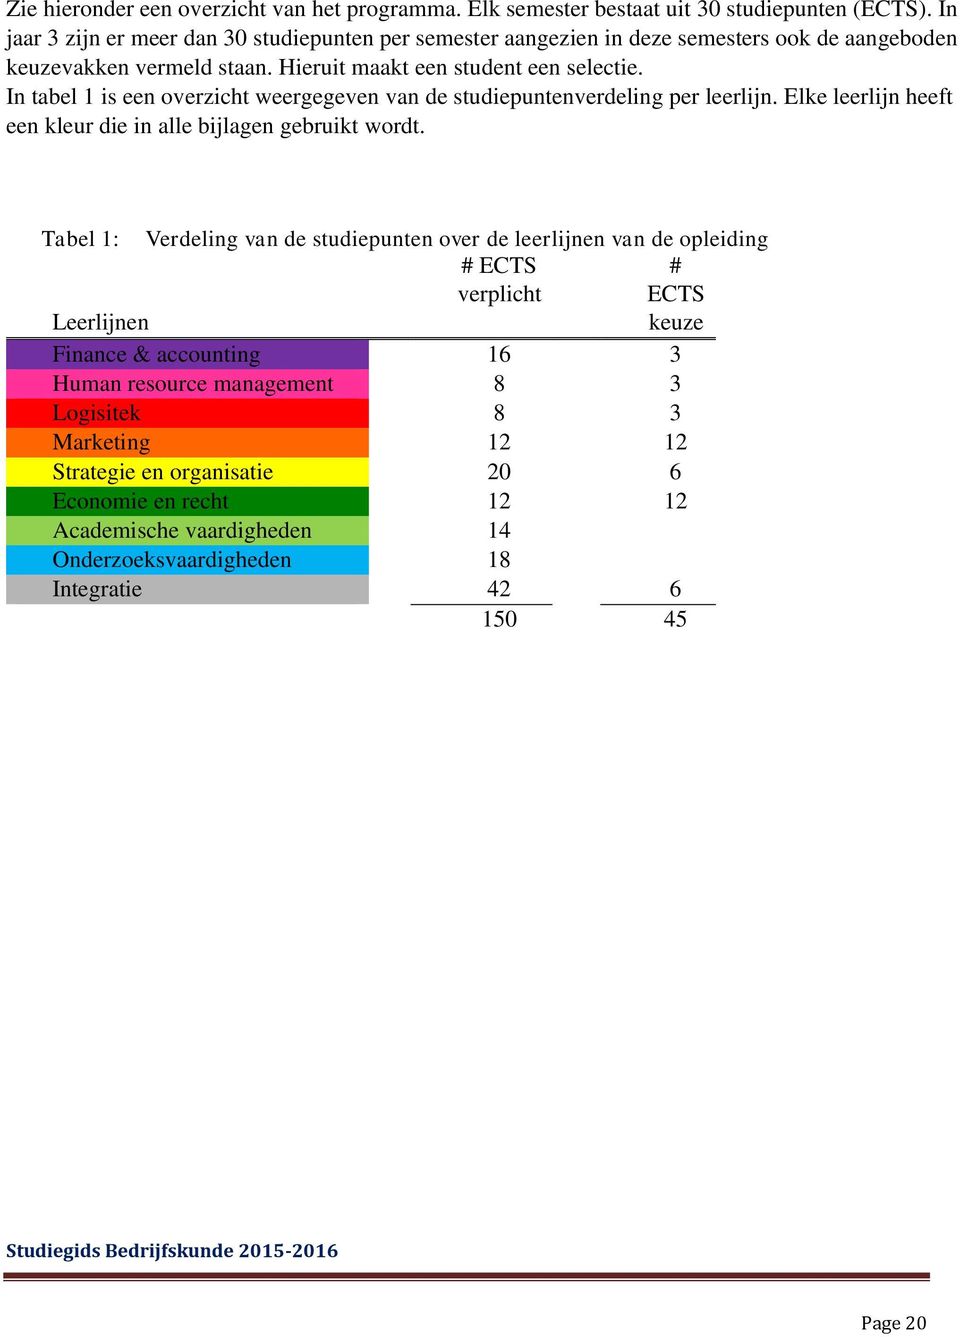 In tabel 1 is een overzicht weergegeven van de studiepuntenverdeling per leerlijn. Elke leerlijn heeft een kleur die in alle bijlagen gebruikt wordt.